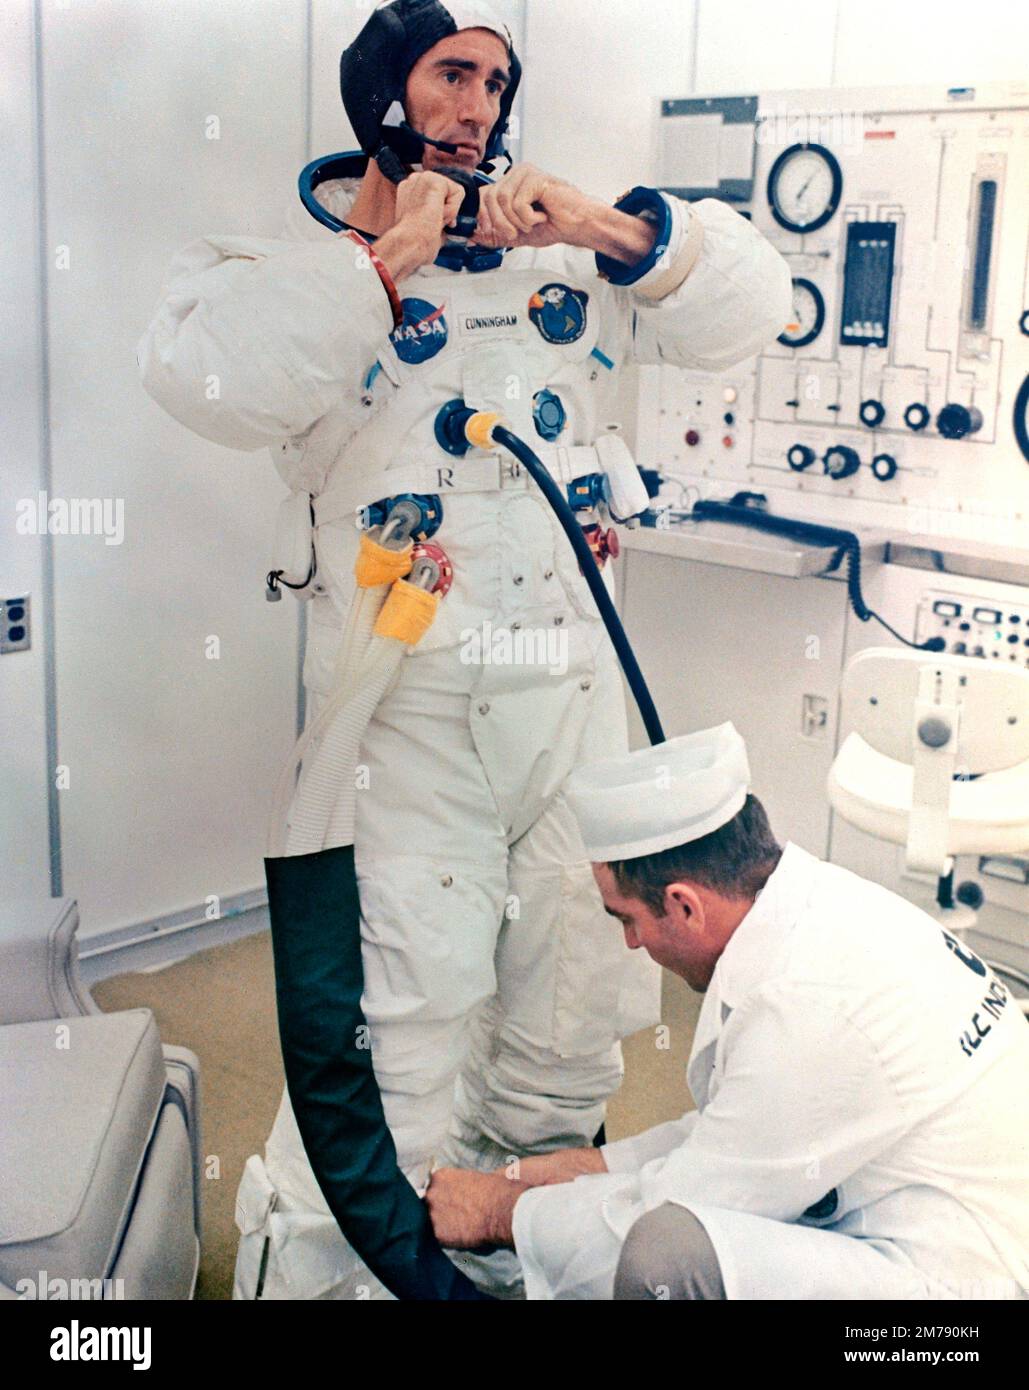 Cape Canaveral, Stati Uniti. 11 ottobre 1968. Walter Cunningham, primo astronauta della NASA Apollo VII, si mette in scena mentre si prepara per il giorno di lancio al Kennedy Space Center, 11 ottobre 1968 a Cape Canaveral, Florida. Cunningham morì il 4 gennaio 2023 all'età di 90 anni, l'ultimo membro sopravvissuto della missione NASA Apollo 7. Foto Stock